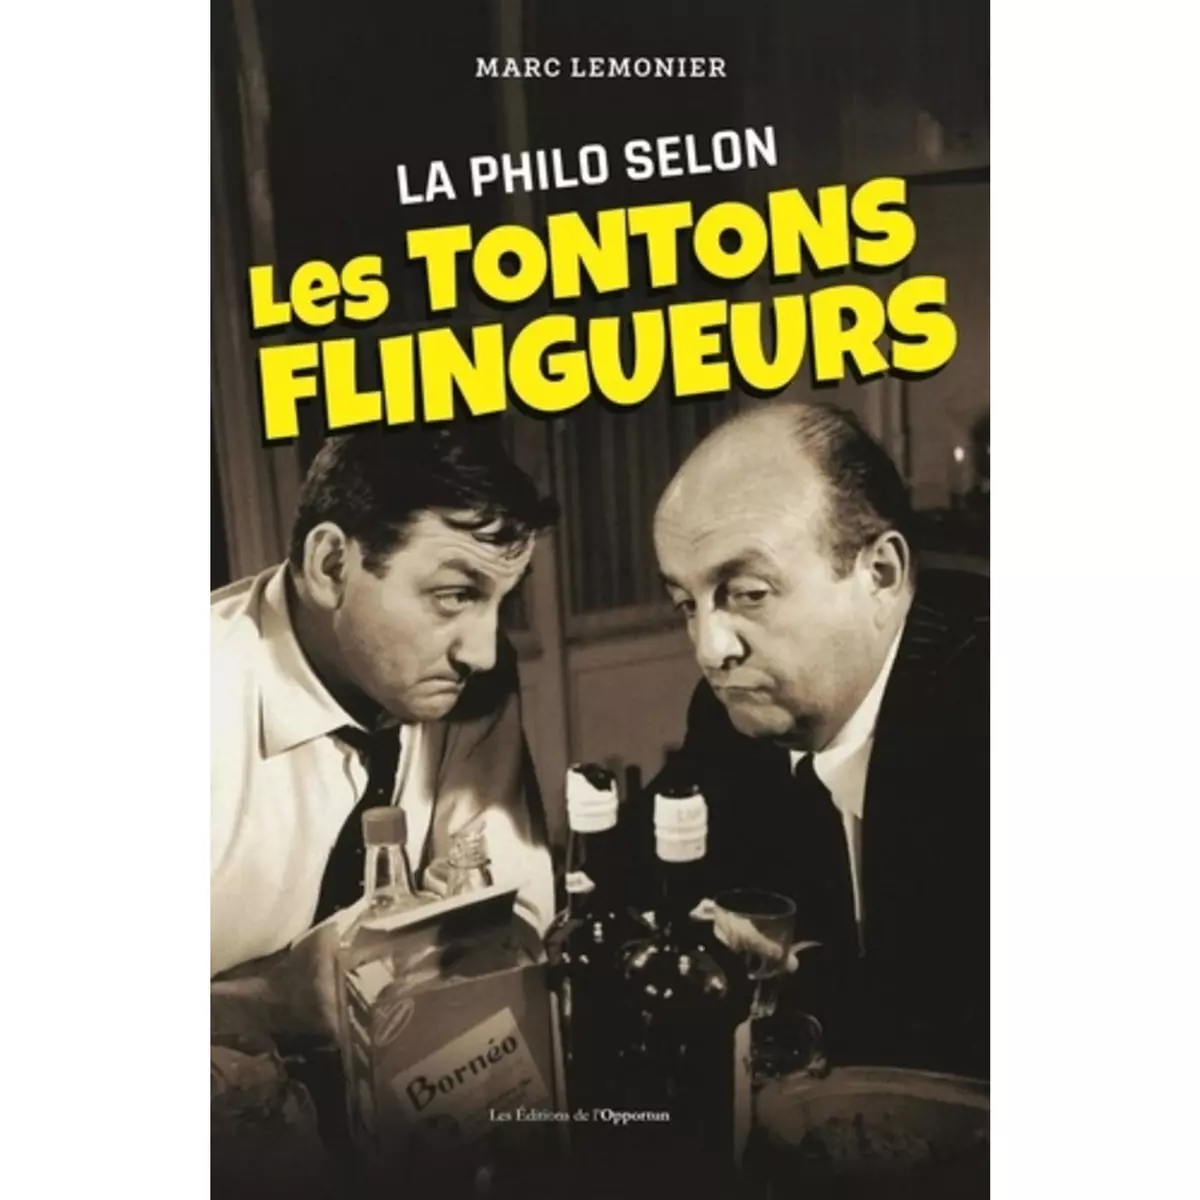  LA PHILO DES TONTONS FLINGUEURS, Lemonier Marc